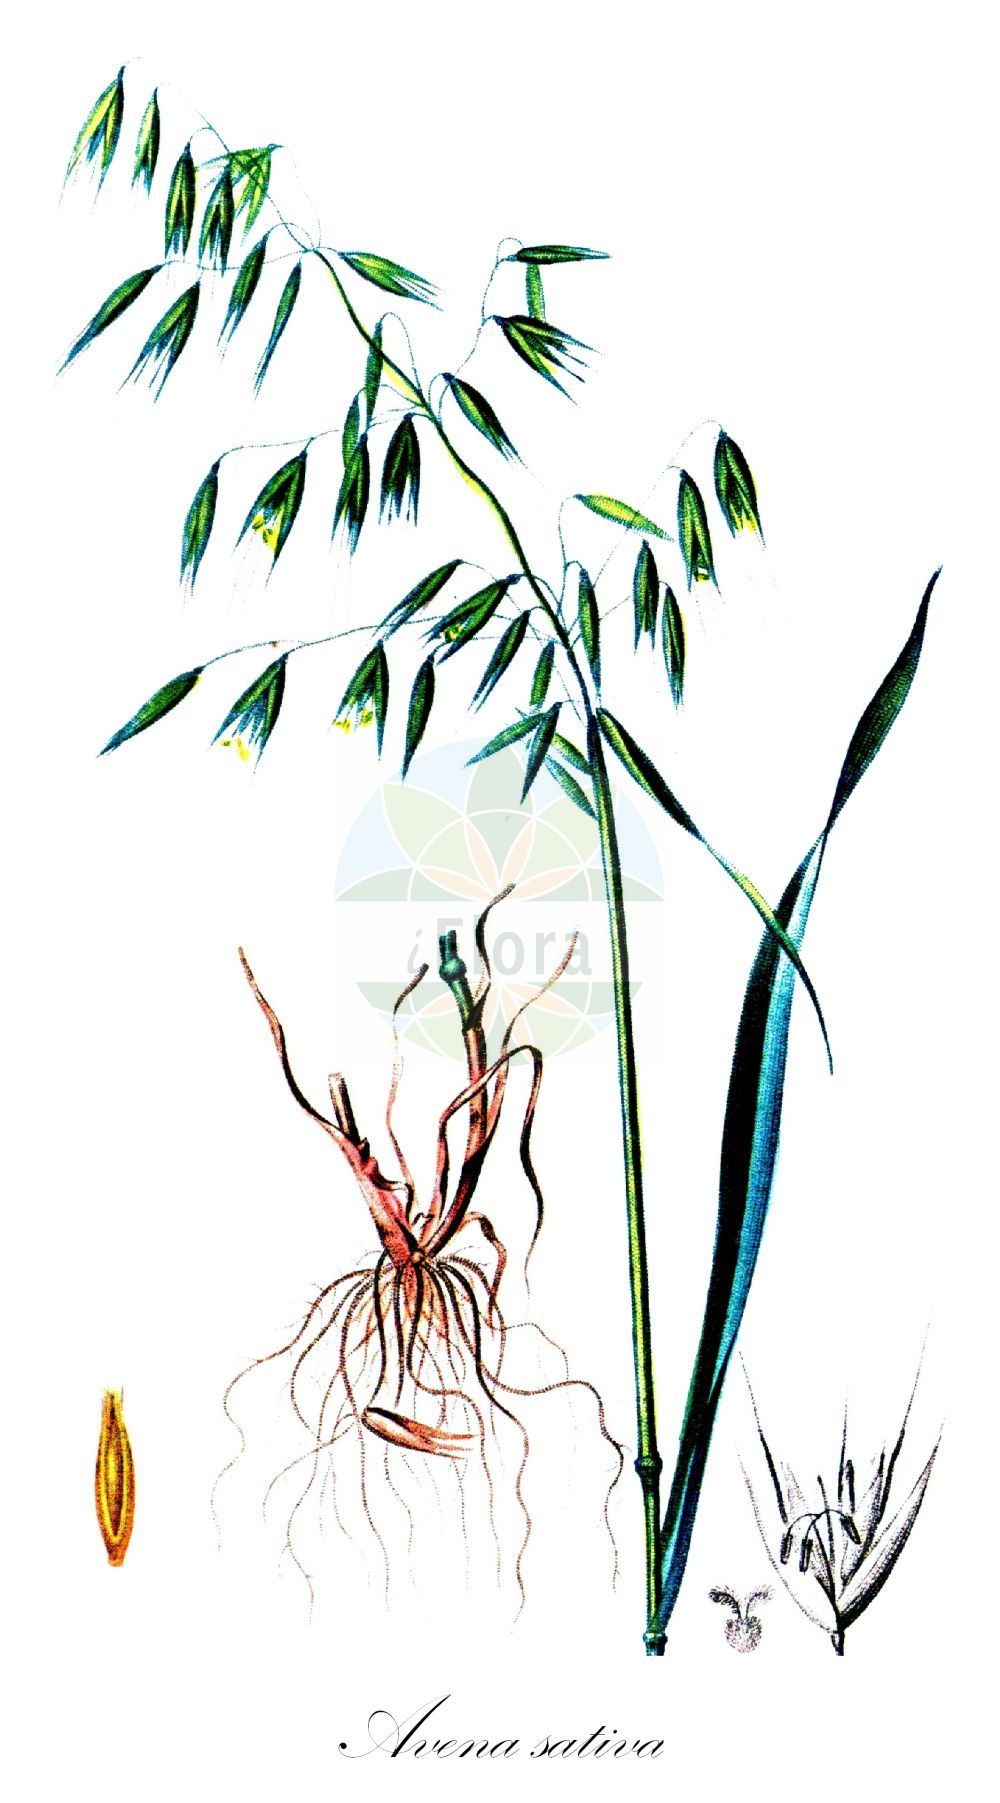 Historische Abbildung von Avena sativa (Saat-Hafer - Oat). Das Bild zeigt Blatt, Bluete, Frucht und Same. ---- Historical Drawing of Avena sativa (Saat-Hafer - Oat). The image is showing leaf, flower, fruit and seed.(Avena sativa,Saat-Hafer,Oat,Avena algeriensis,Avena nodipilosa,Avena orientalis,Avena sativa,Avena sativa var. macrantha,Saat-Hafer,Oat,Common Oat,Cultivated Oat,Avena,Hafer,Oat,Poaceae,Süßgräser,Grass family,Blatt,Bluete,Frucht,Same,leaf,flower,fruit,seed,Chaumeton (1814f))